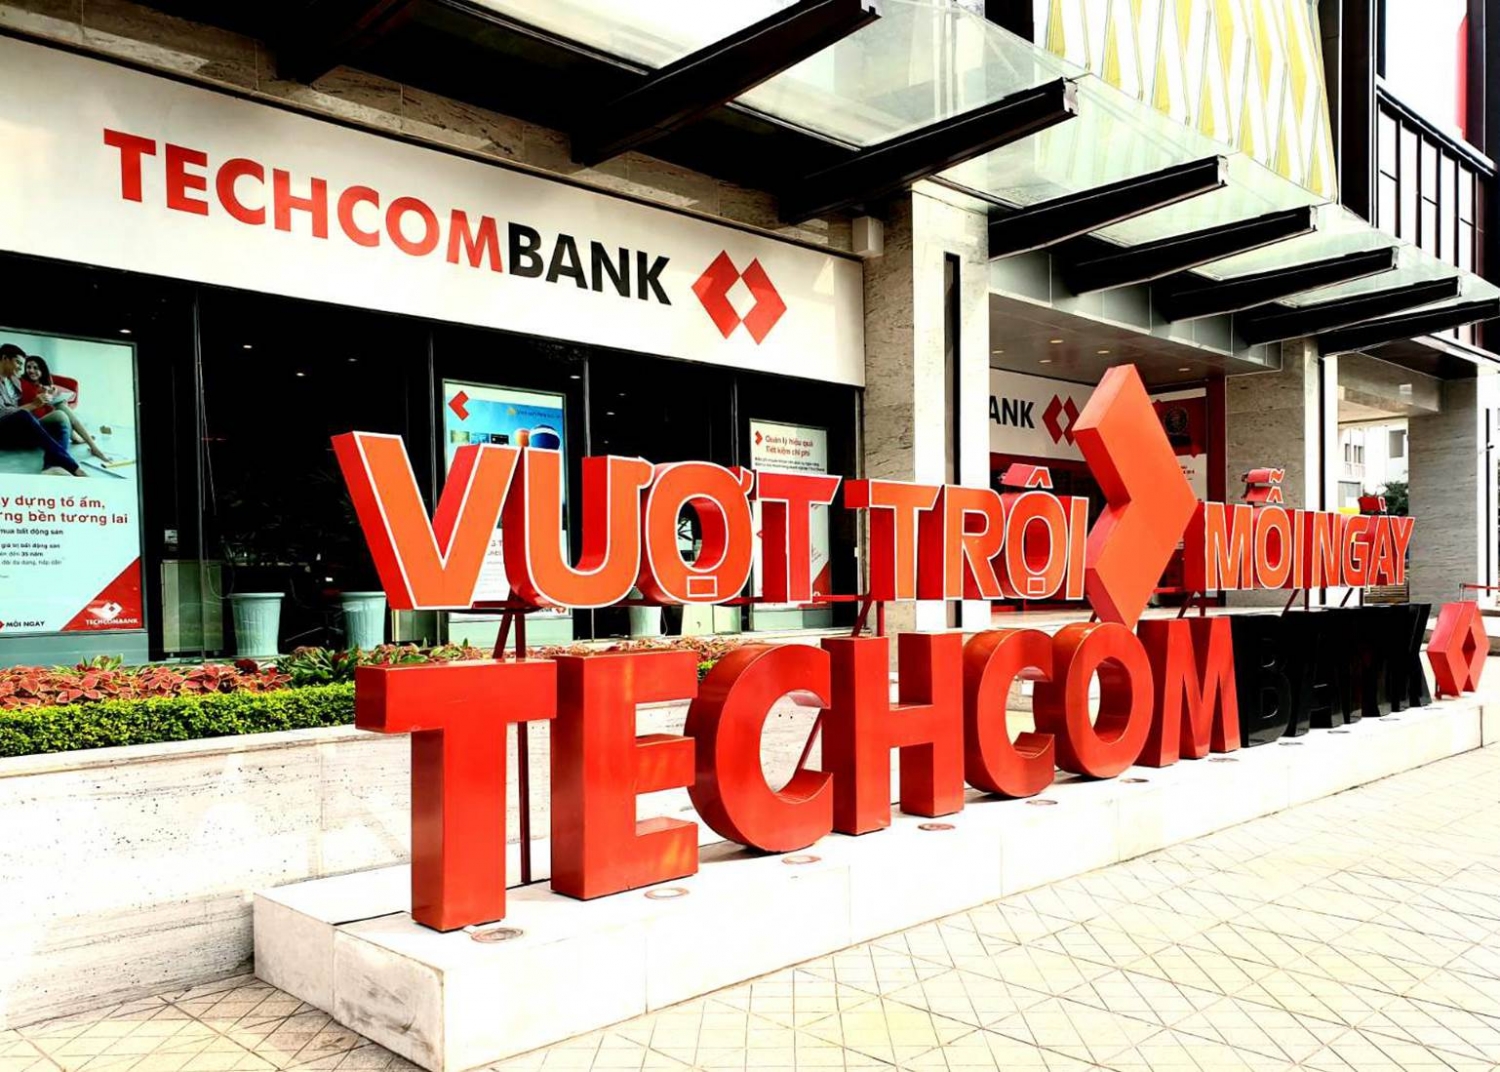 Tin ngân hàng ngày 14/3: Techcombank cấp khoản vay 1.500 tỷ đồng cho hai doanh nghiệp khai khoáng